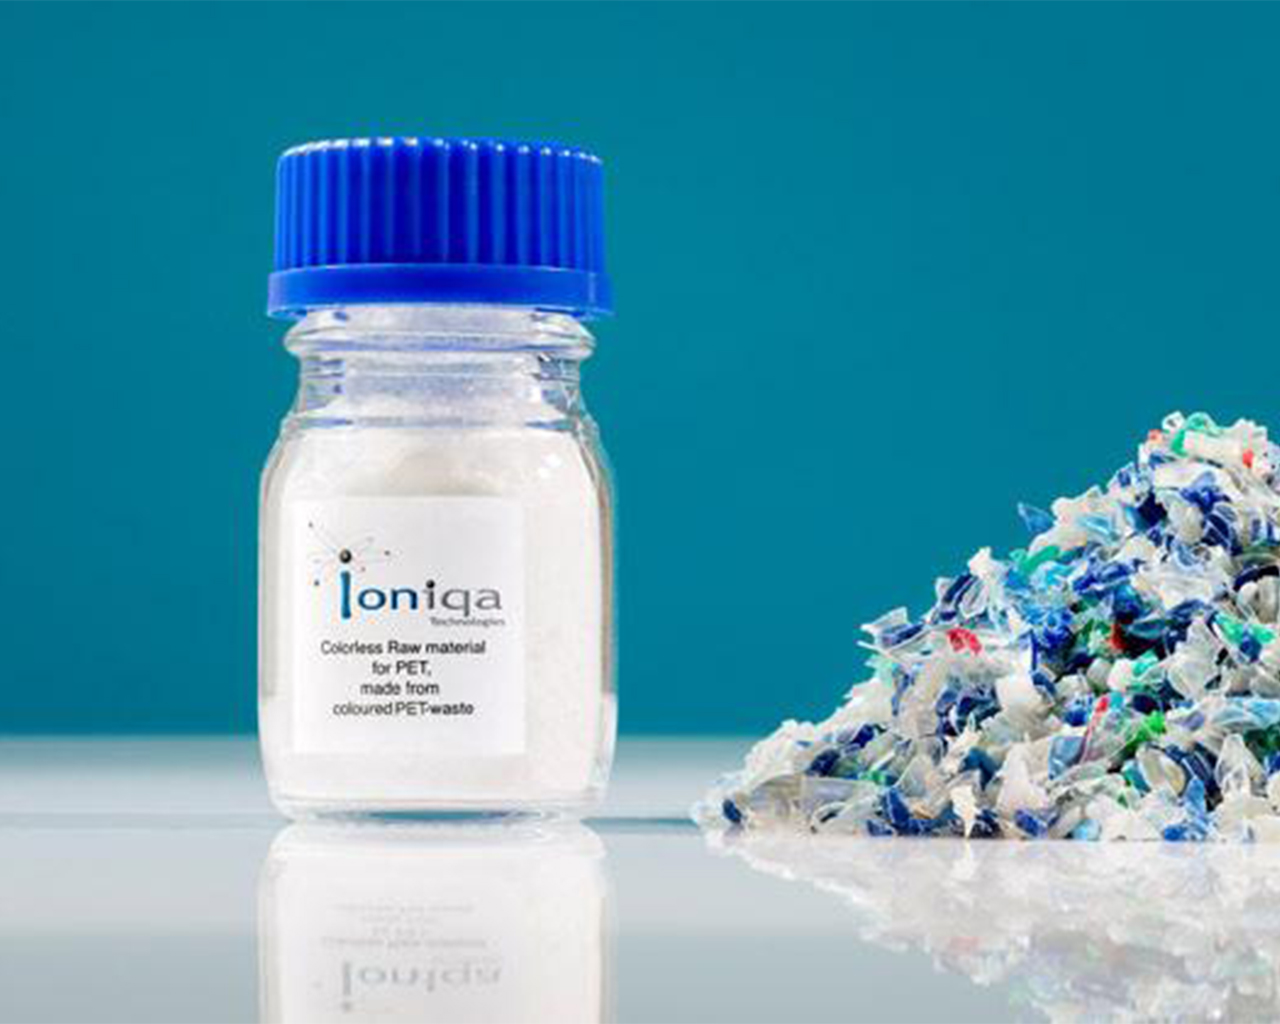 Flacone di ioniqa con accanto piccoli pezzi di plastica accumulati.